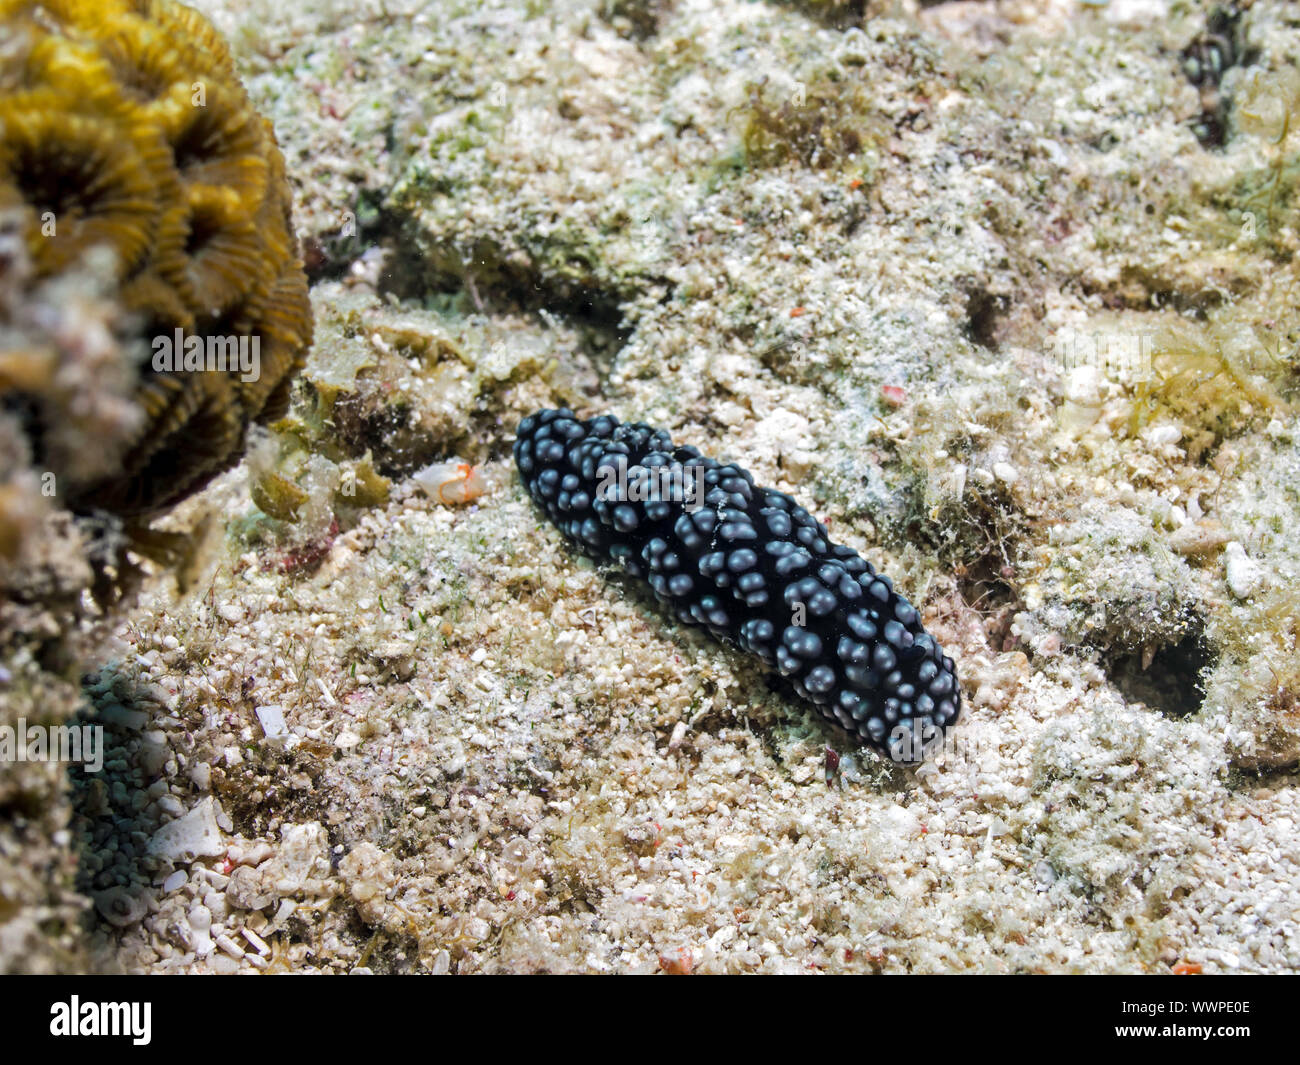 Sea slug (Phyllidiella pustulosa) Stock Photo